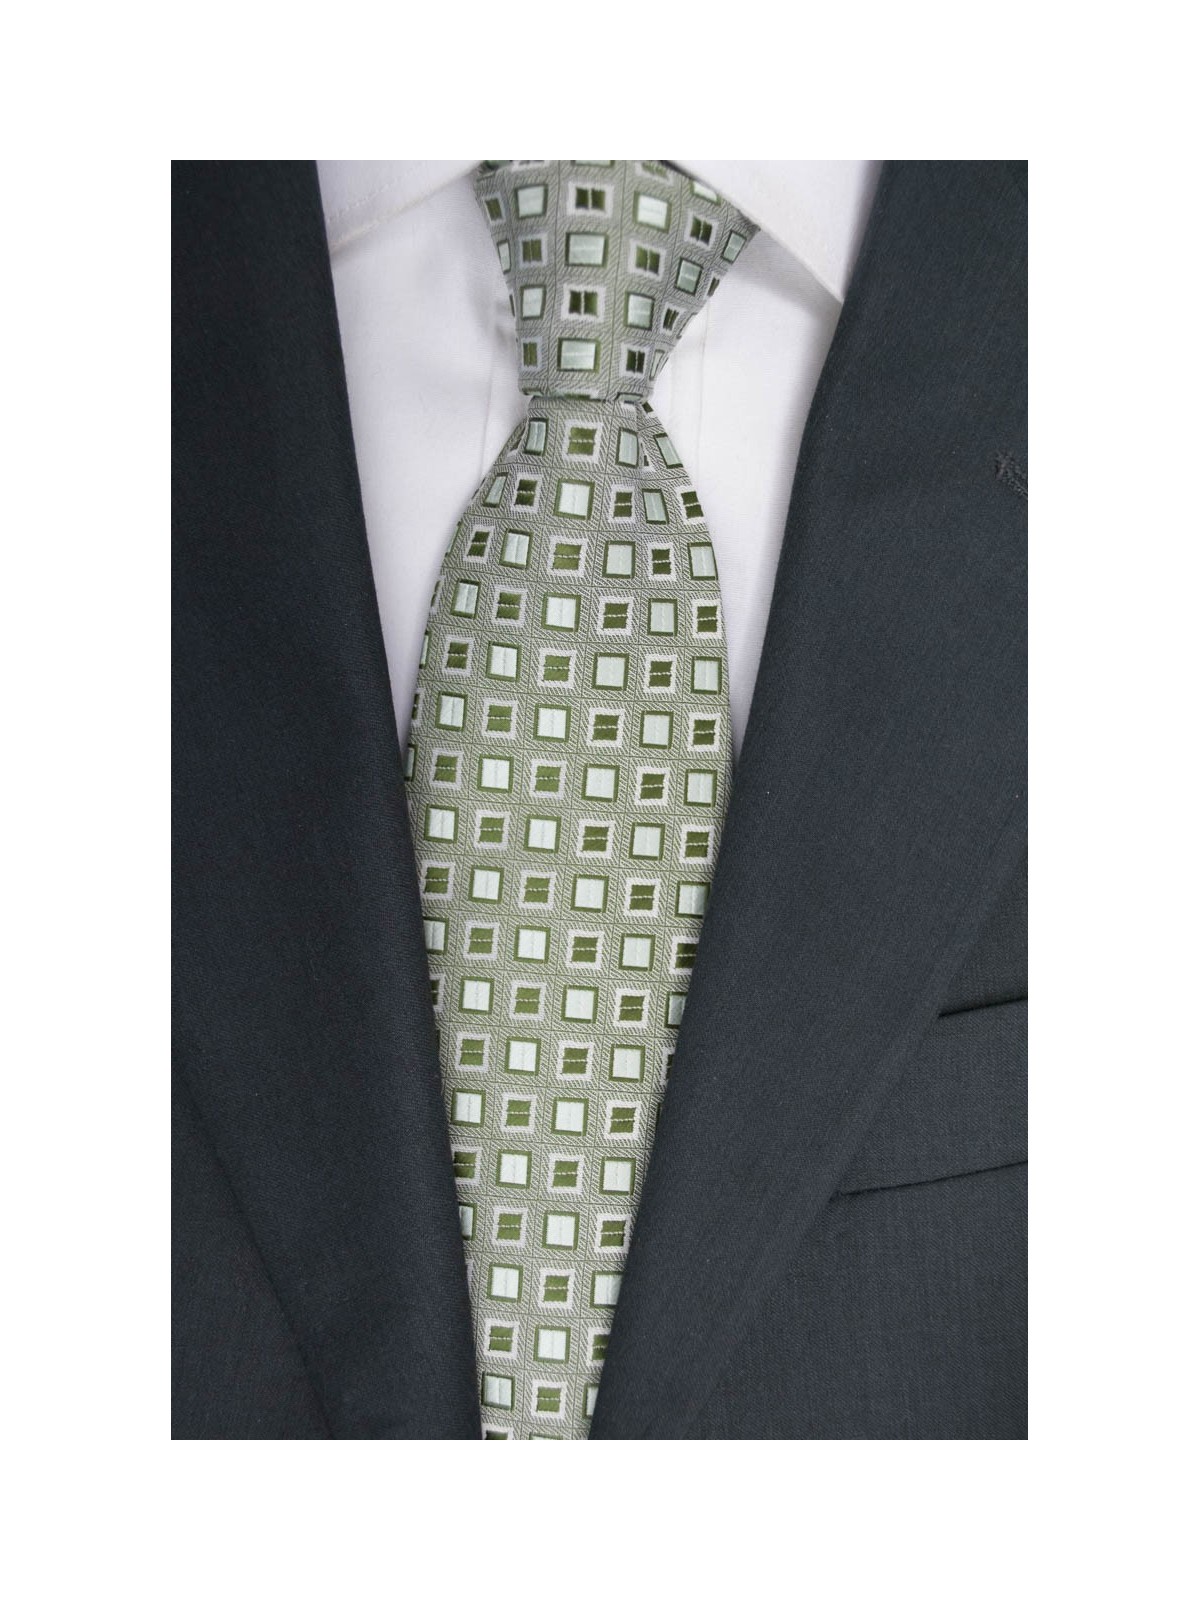 Corbata verde con Pequeños diseños en Verde Oscuro - 100% Pura Seda - Made in Italy